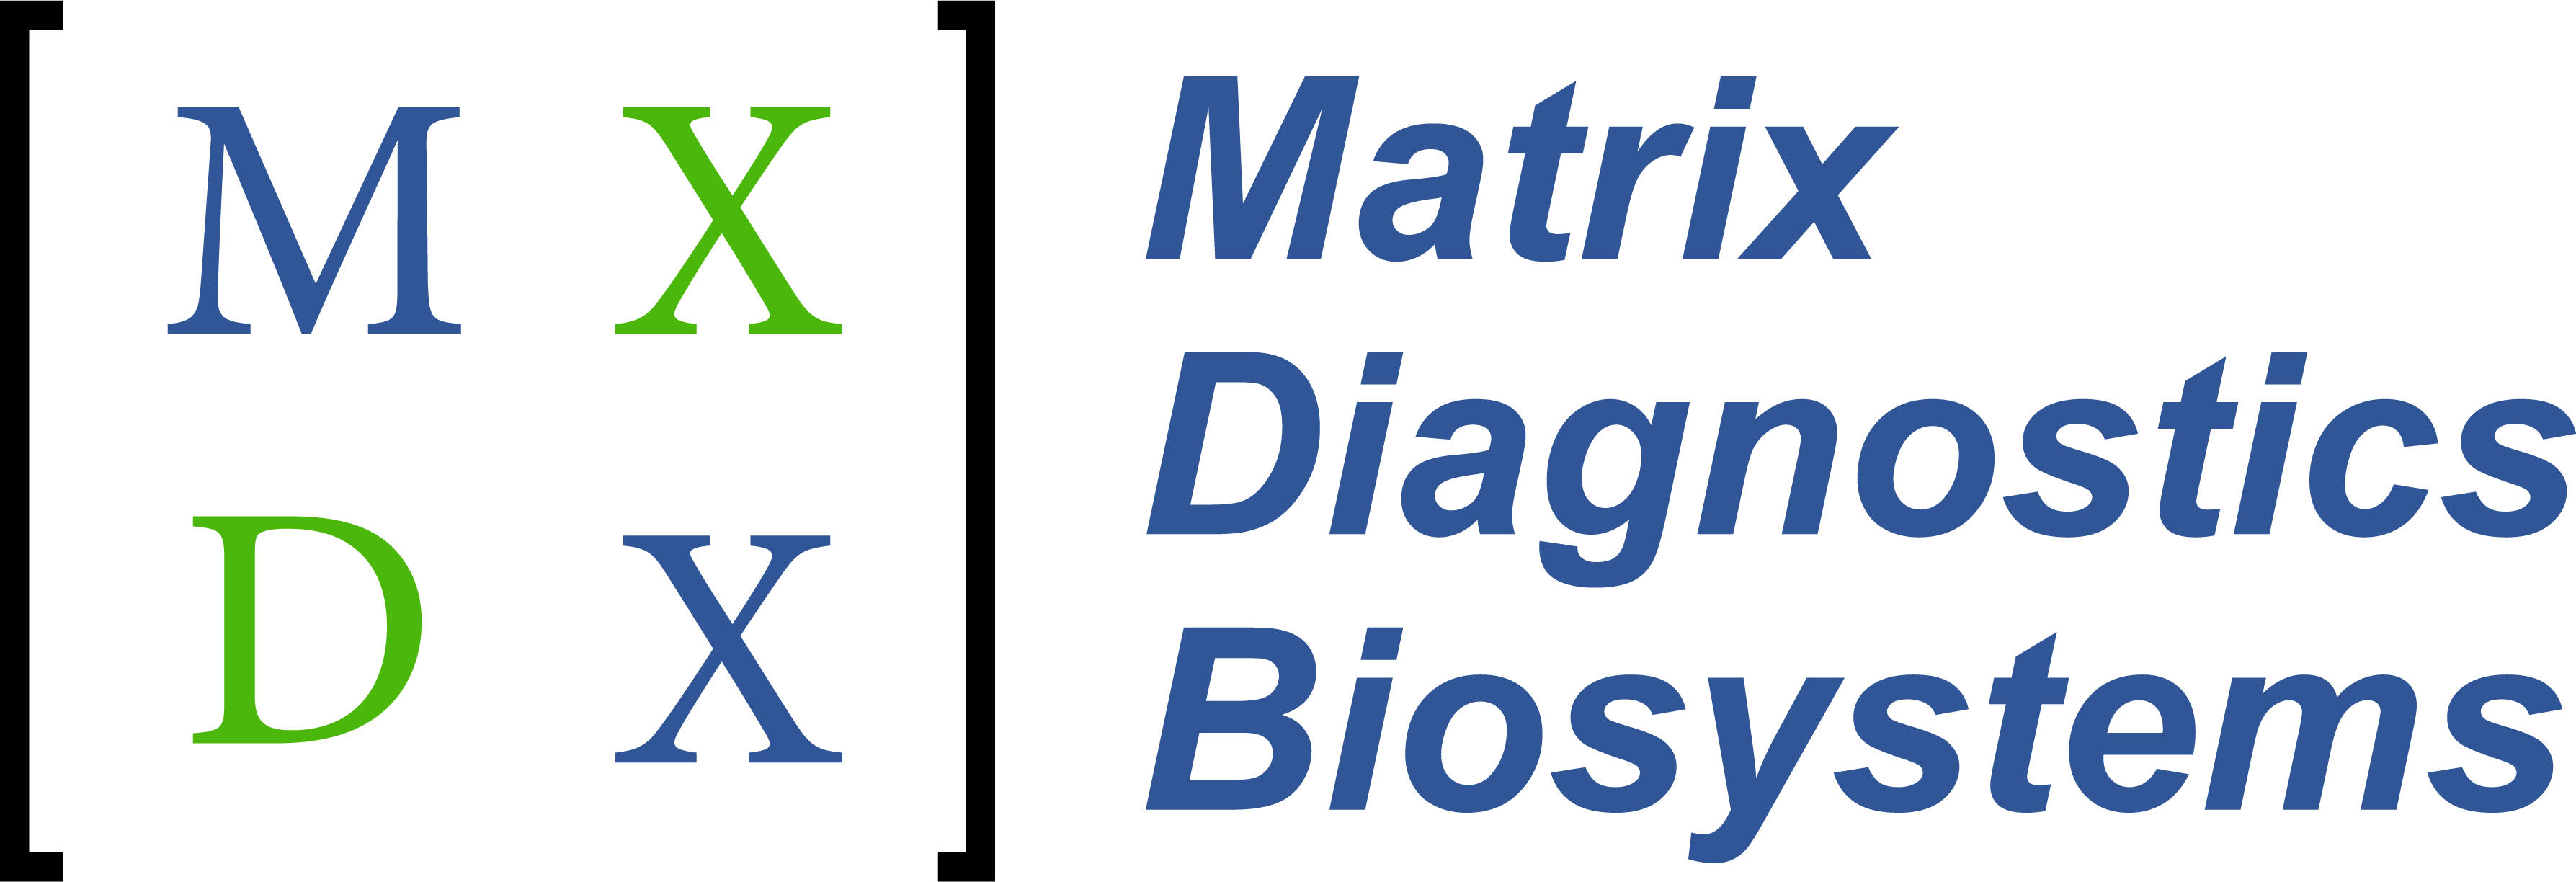 Matrix Diagnostics